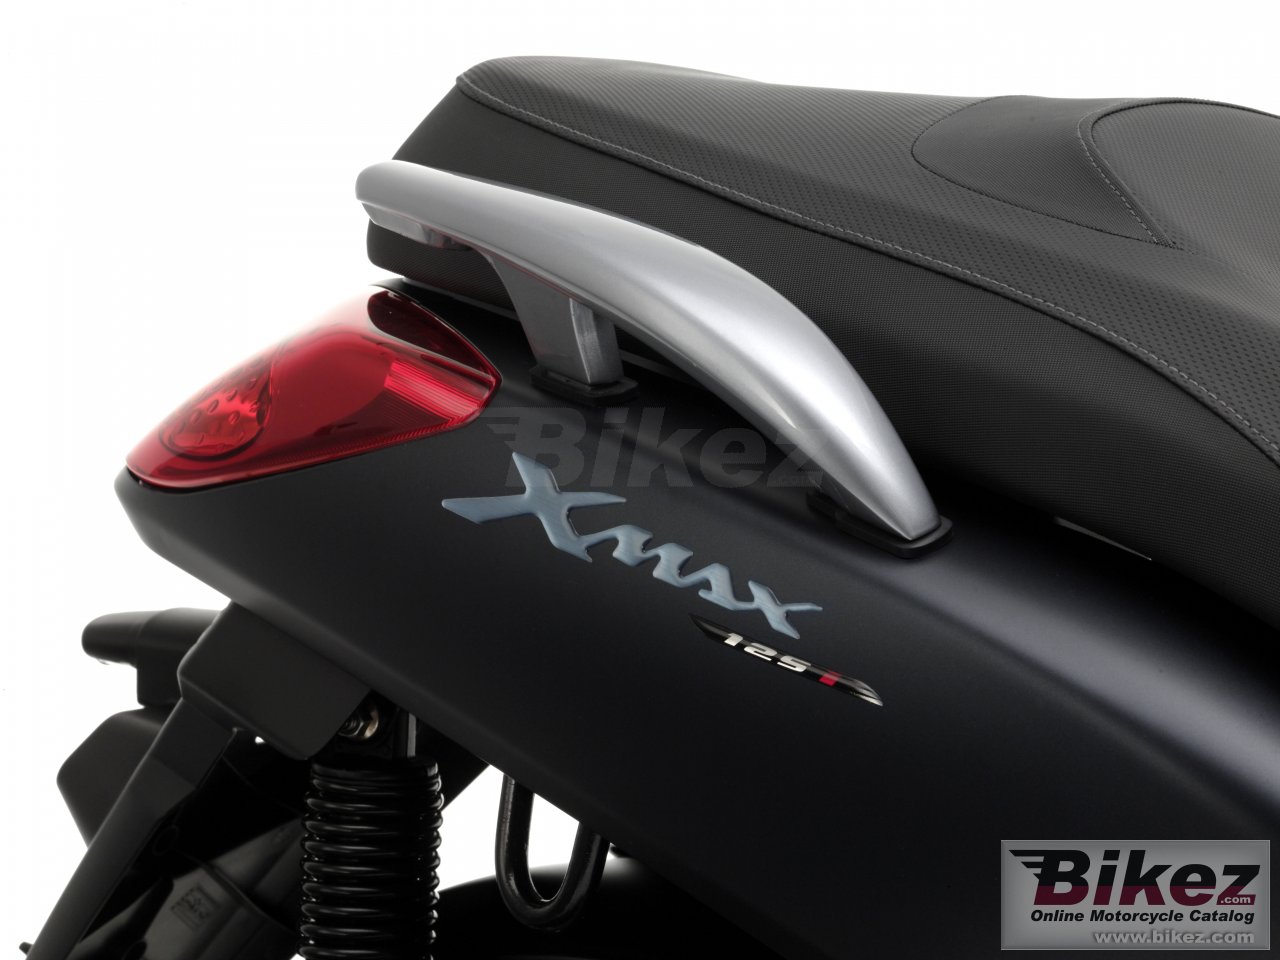 Yamaha X-Max 125